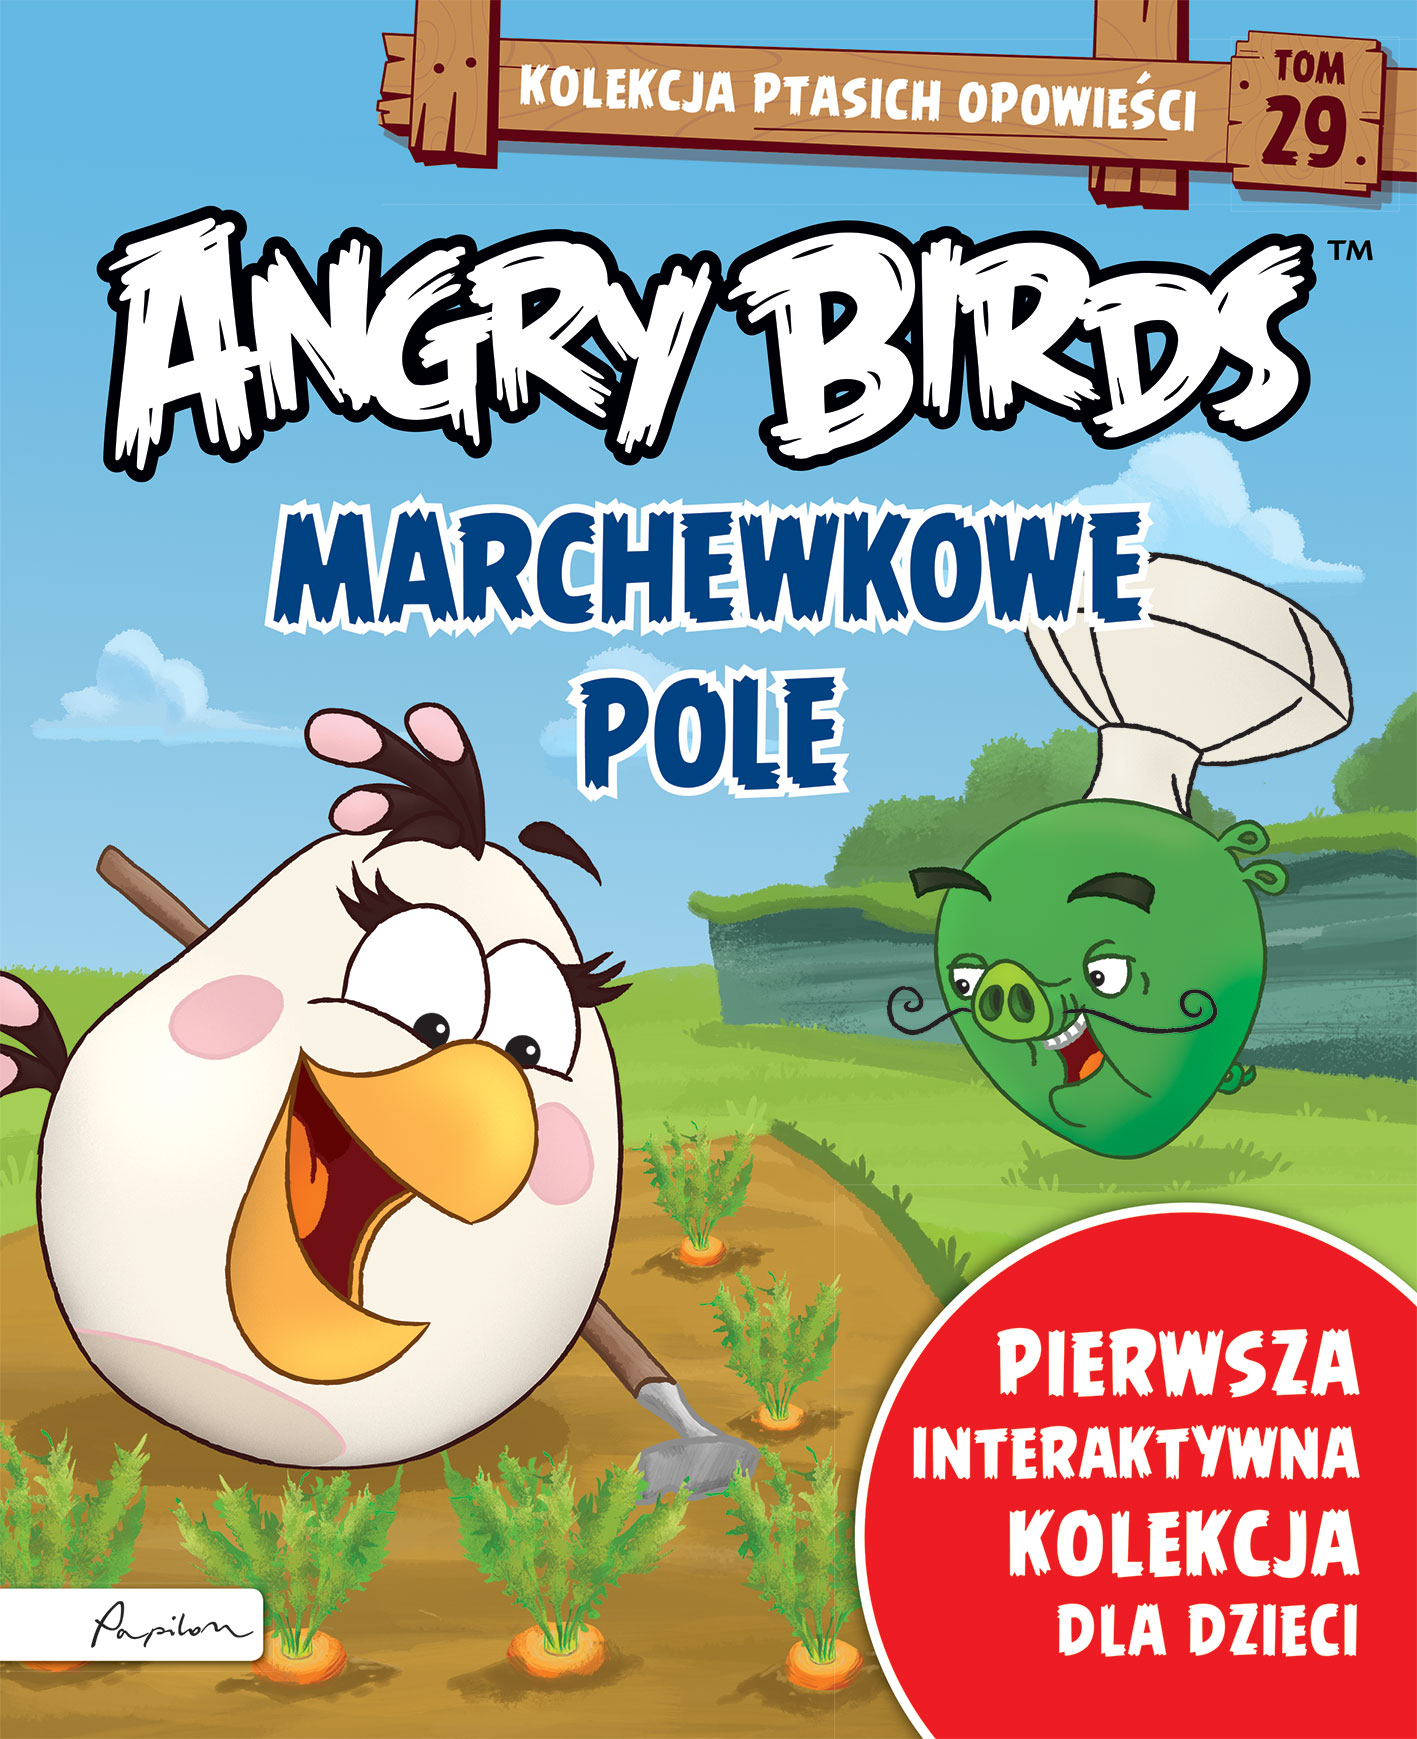 Angry Birds. Kolekcja ptasich opowieści 29. Marchewkowe pole. 